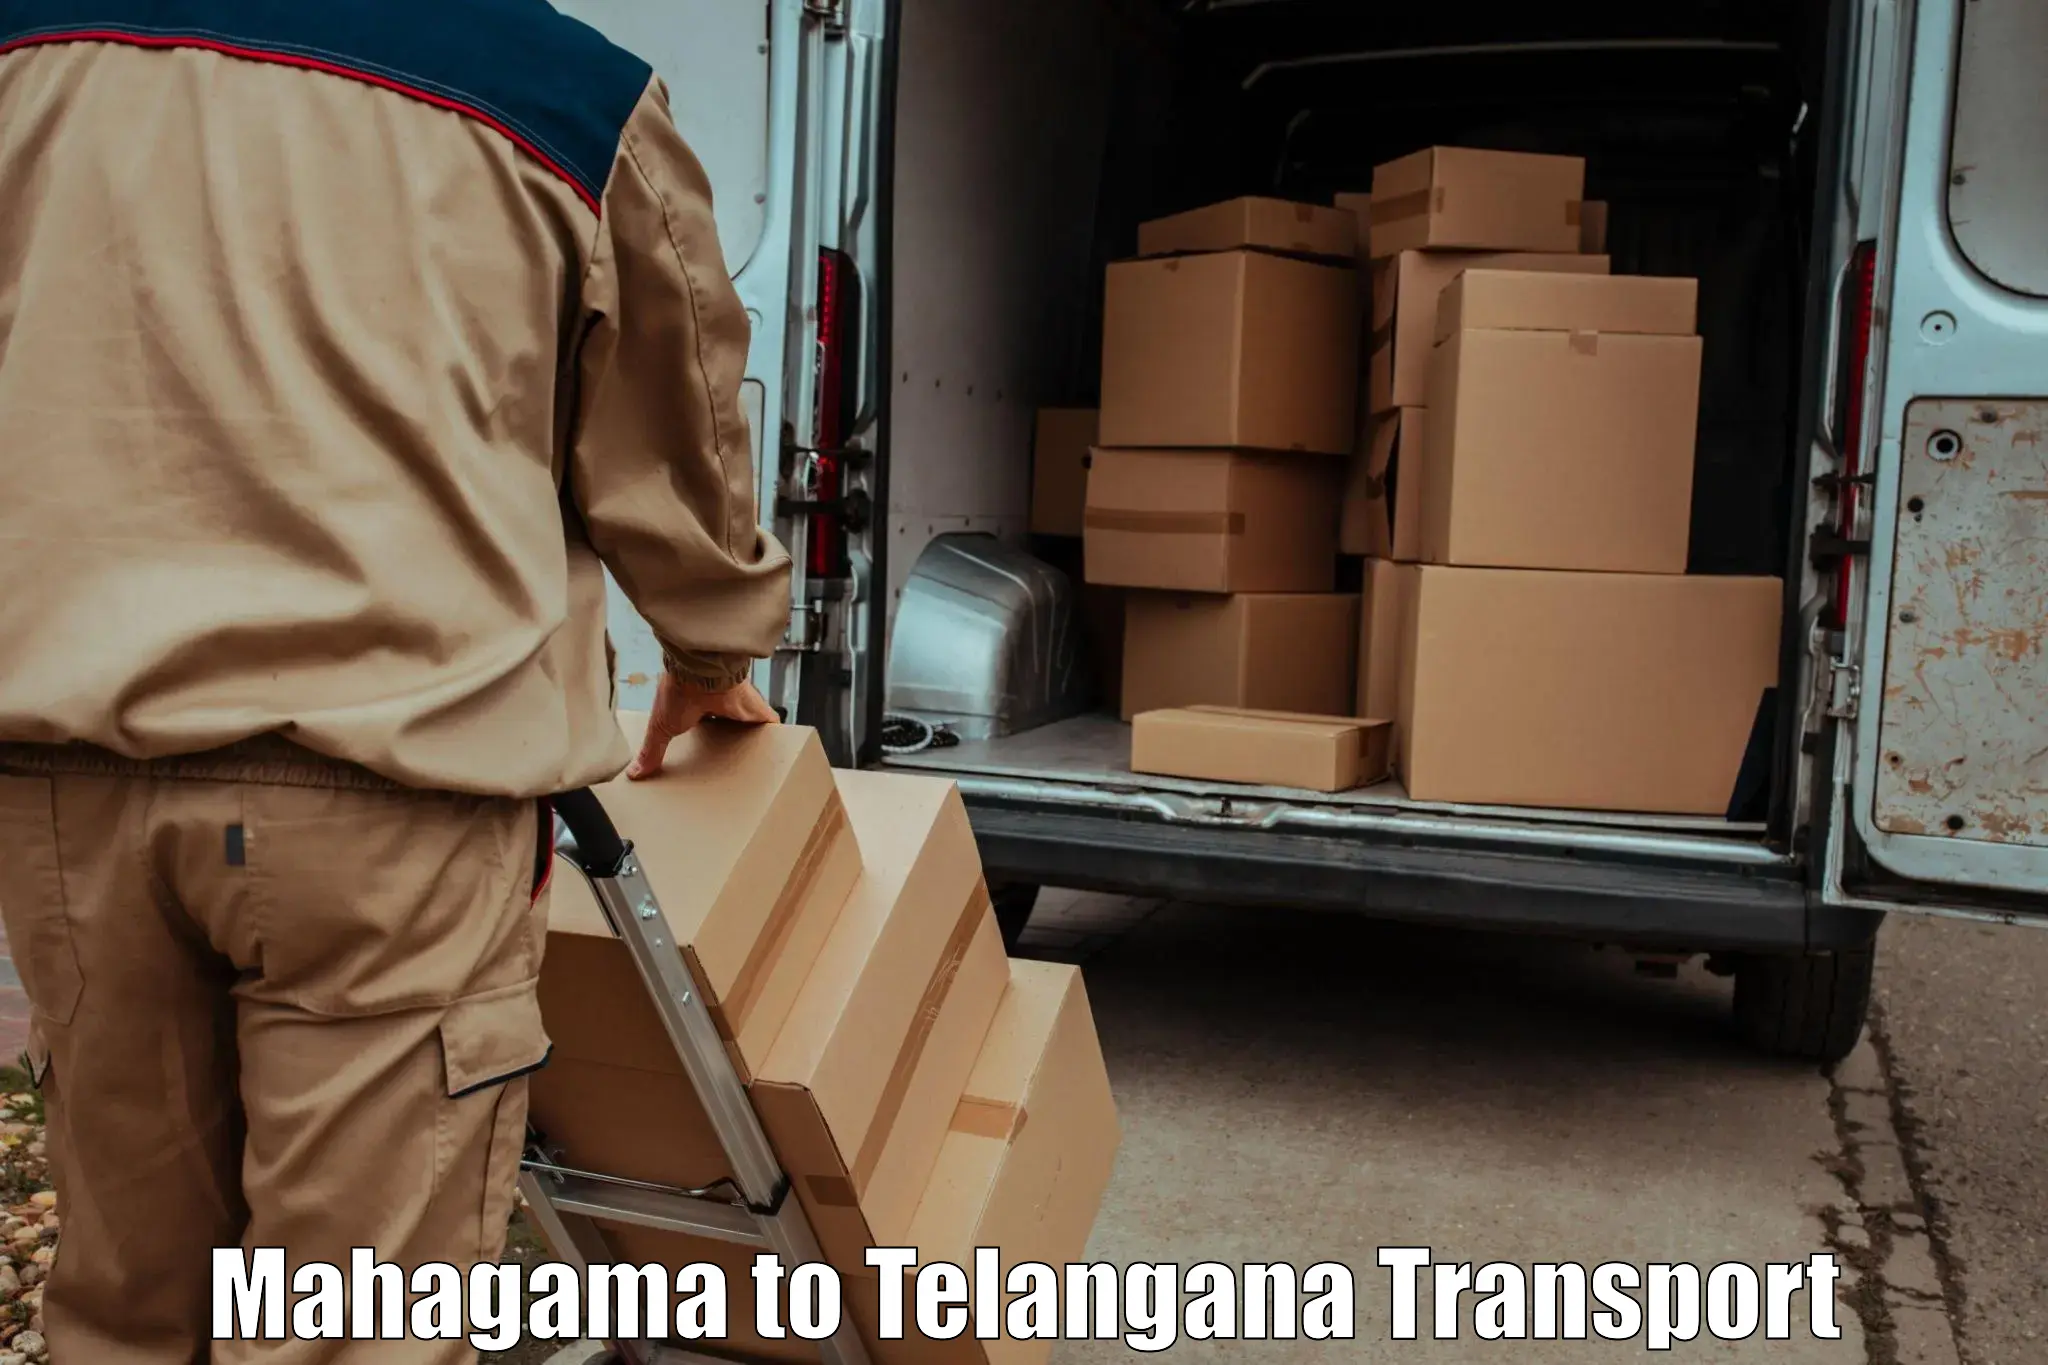 Container transport service Mahagama to Nakerakal